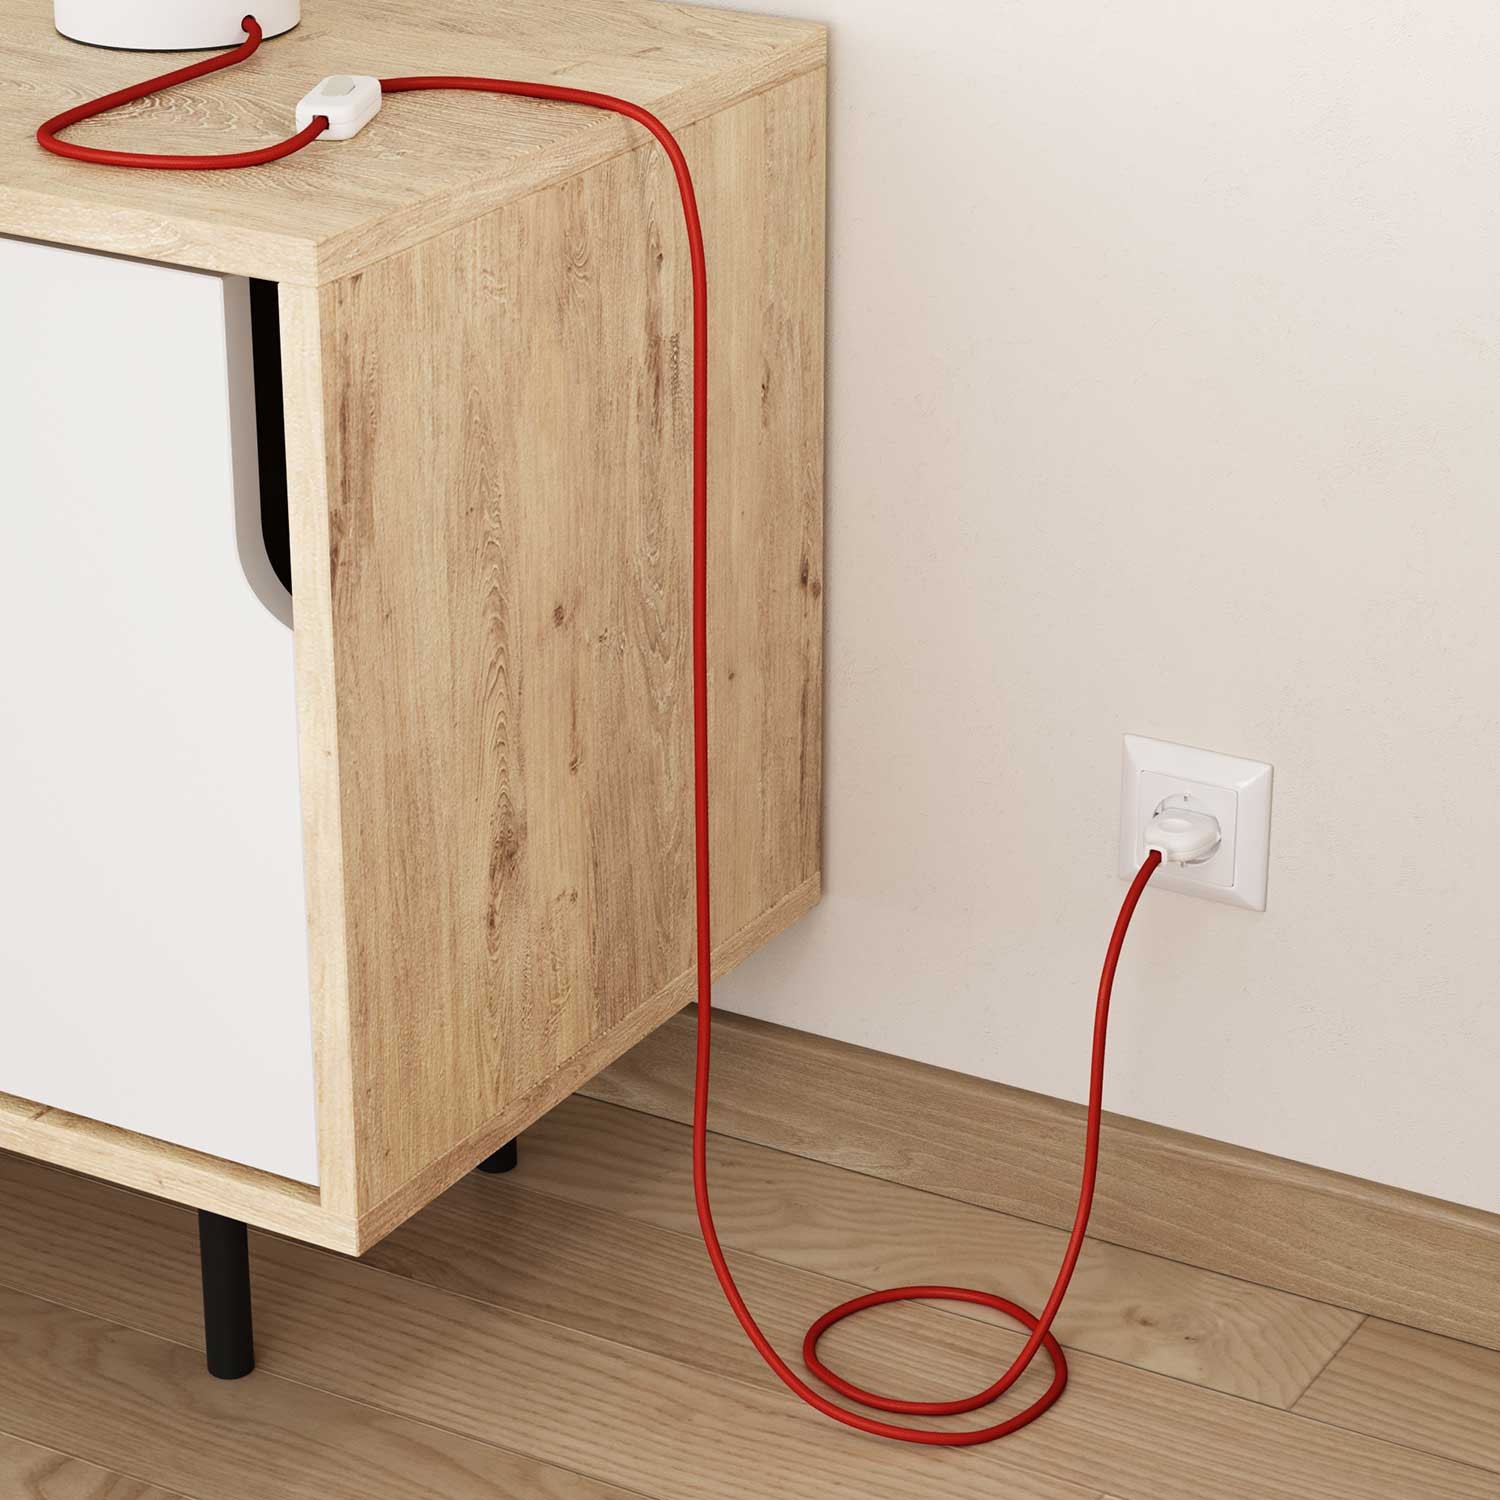 Okrugli tekstilni električni kabel RM09 - crvena